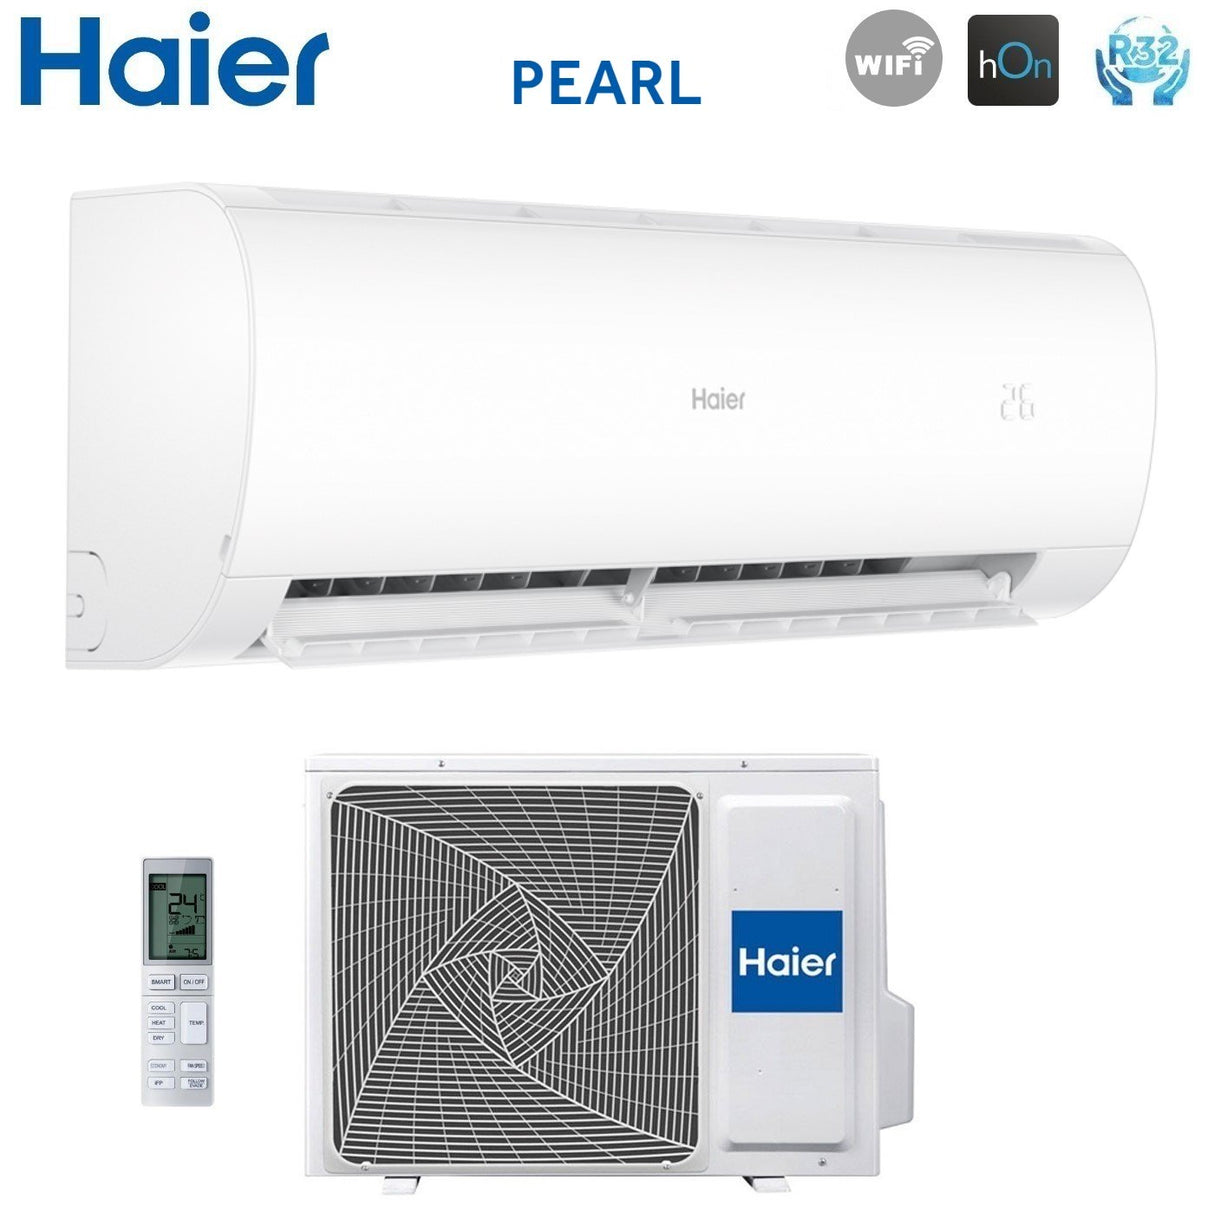 immagine-4-haier-climatizzatore-condizionatore-haier-inverter-serie-pearl-24000-btu-as68pdahra-r-32-wi-fi-integrato-aa